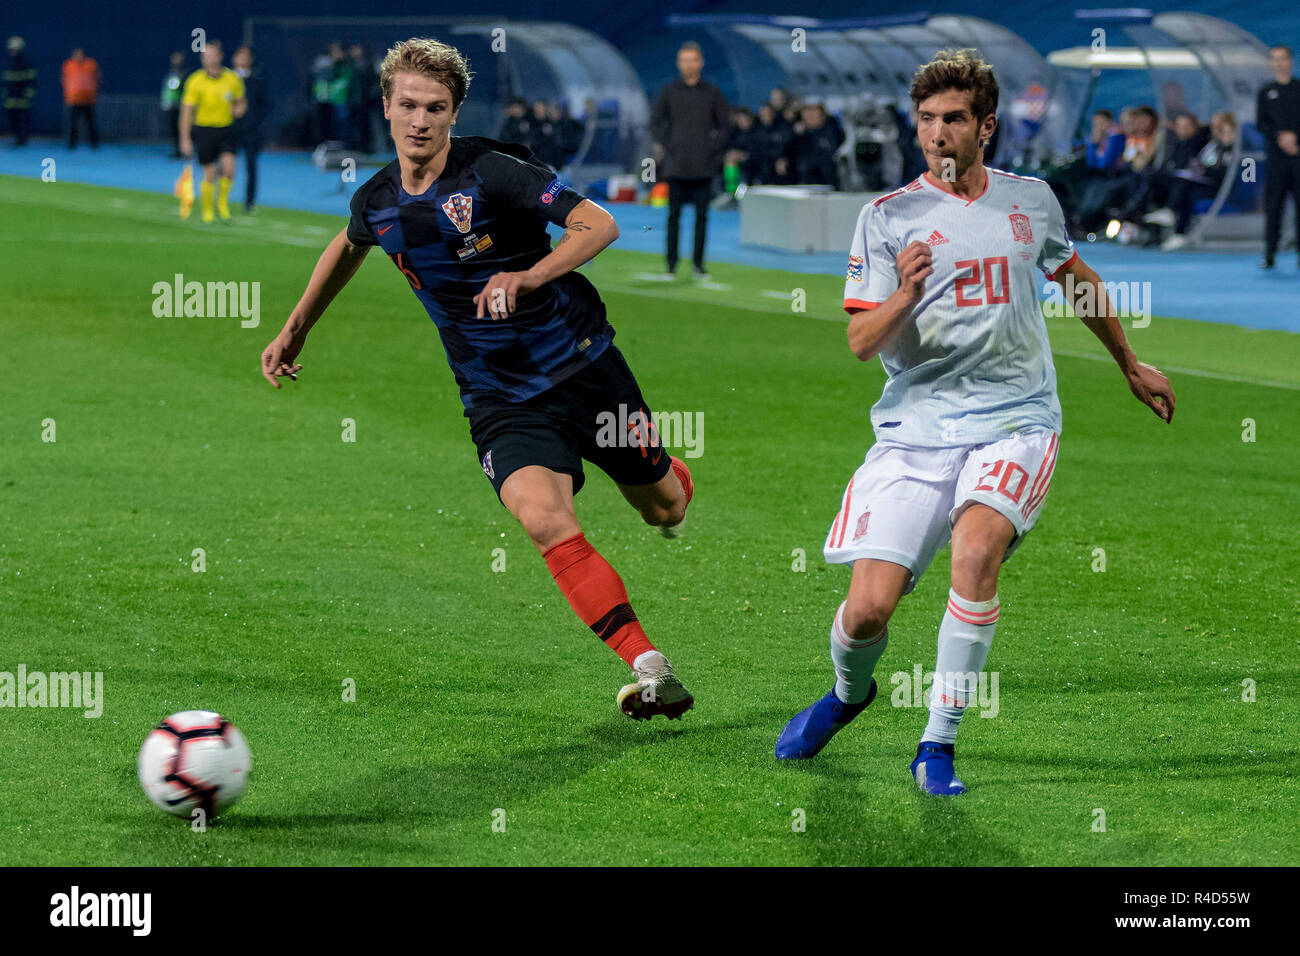 ZAGREB, CROATIA - NOVEMBER 15, 2018: UEFA Nations League football match Croatia vs. Spain. In action Tin Jedvaj (16) and Sergi Roberto (20) Stock Photo